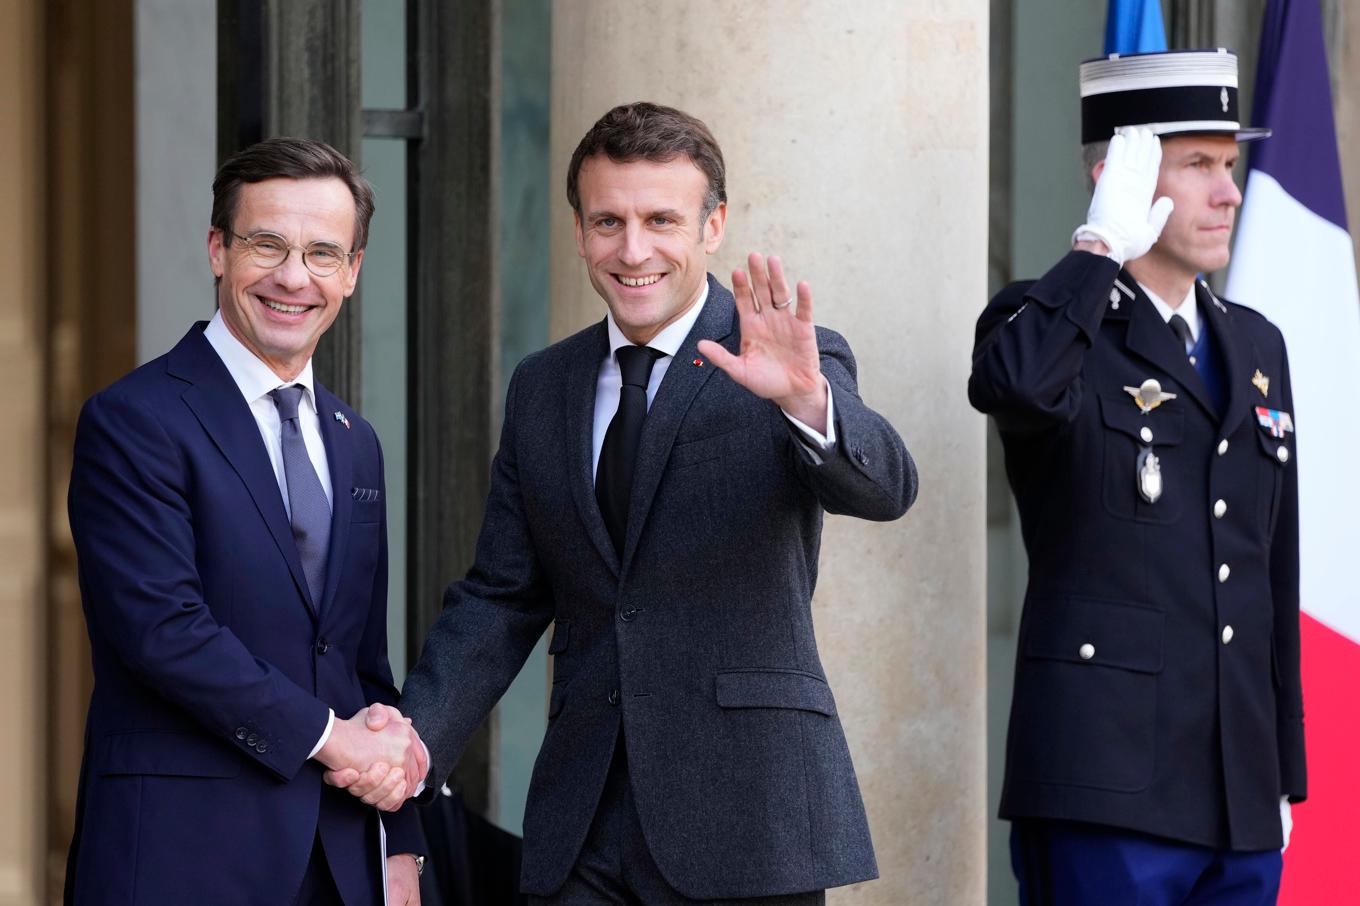 Sverige och Frankrike ska teckna flera samarbetsavtal under president Macrons statsbesök. Arkivbild. Foto: Francois Mori/AP/TT